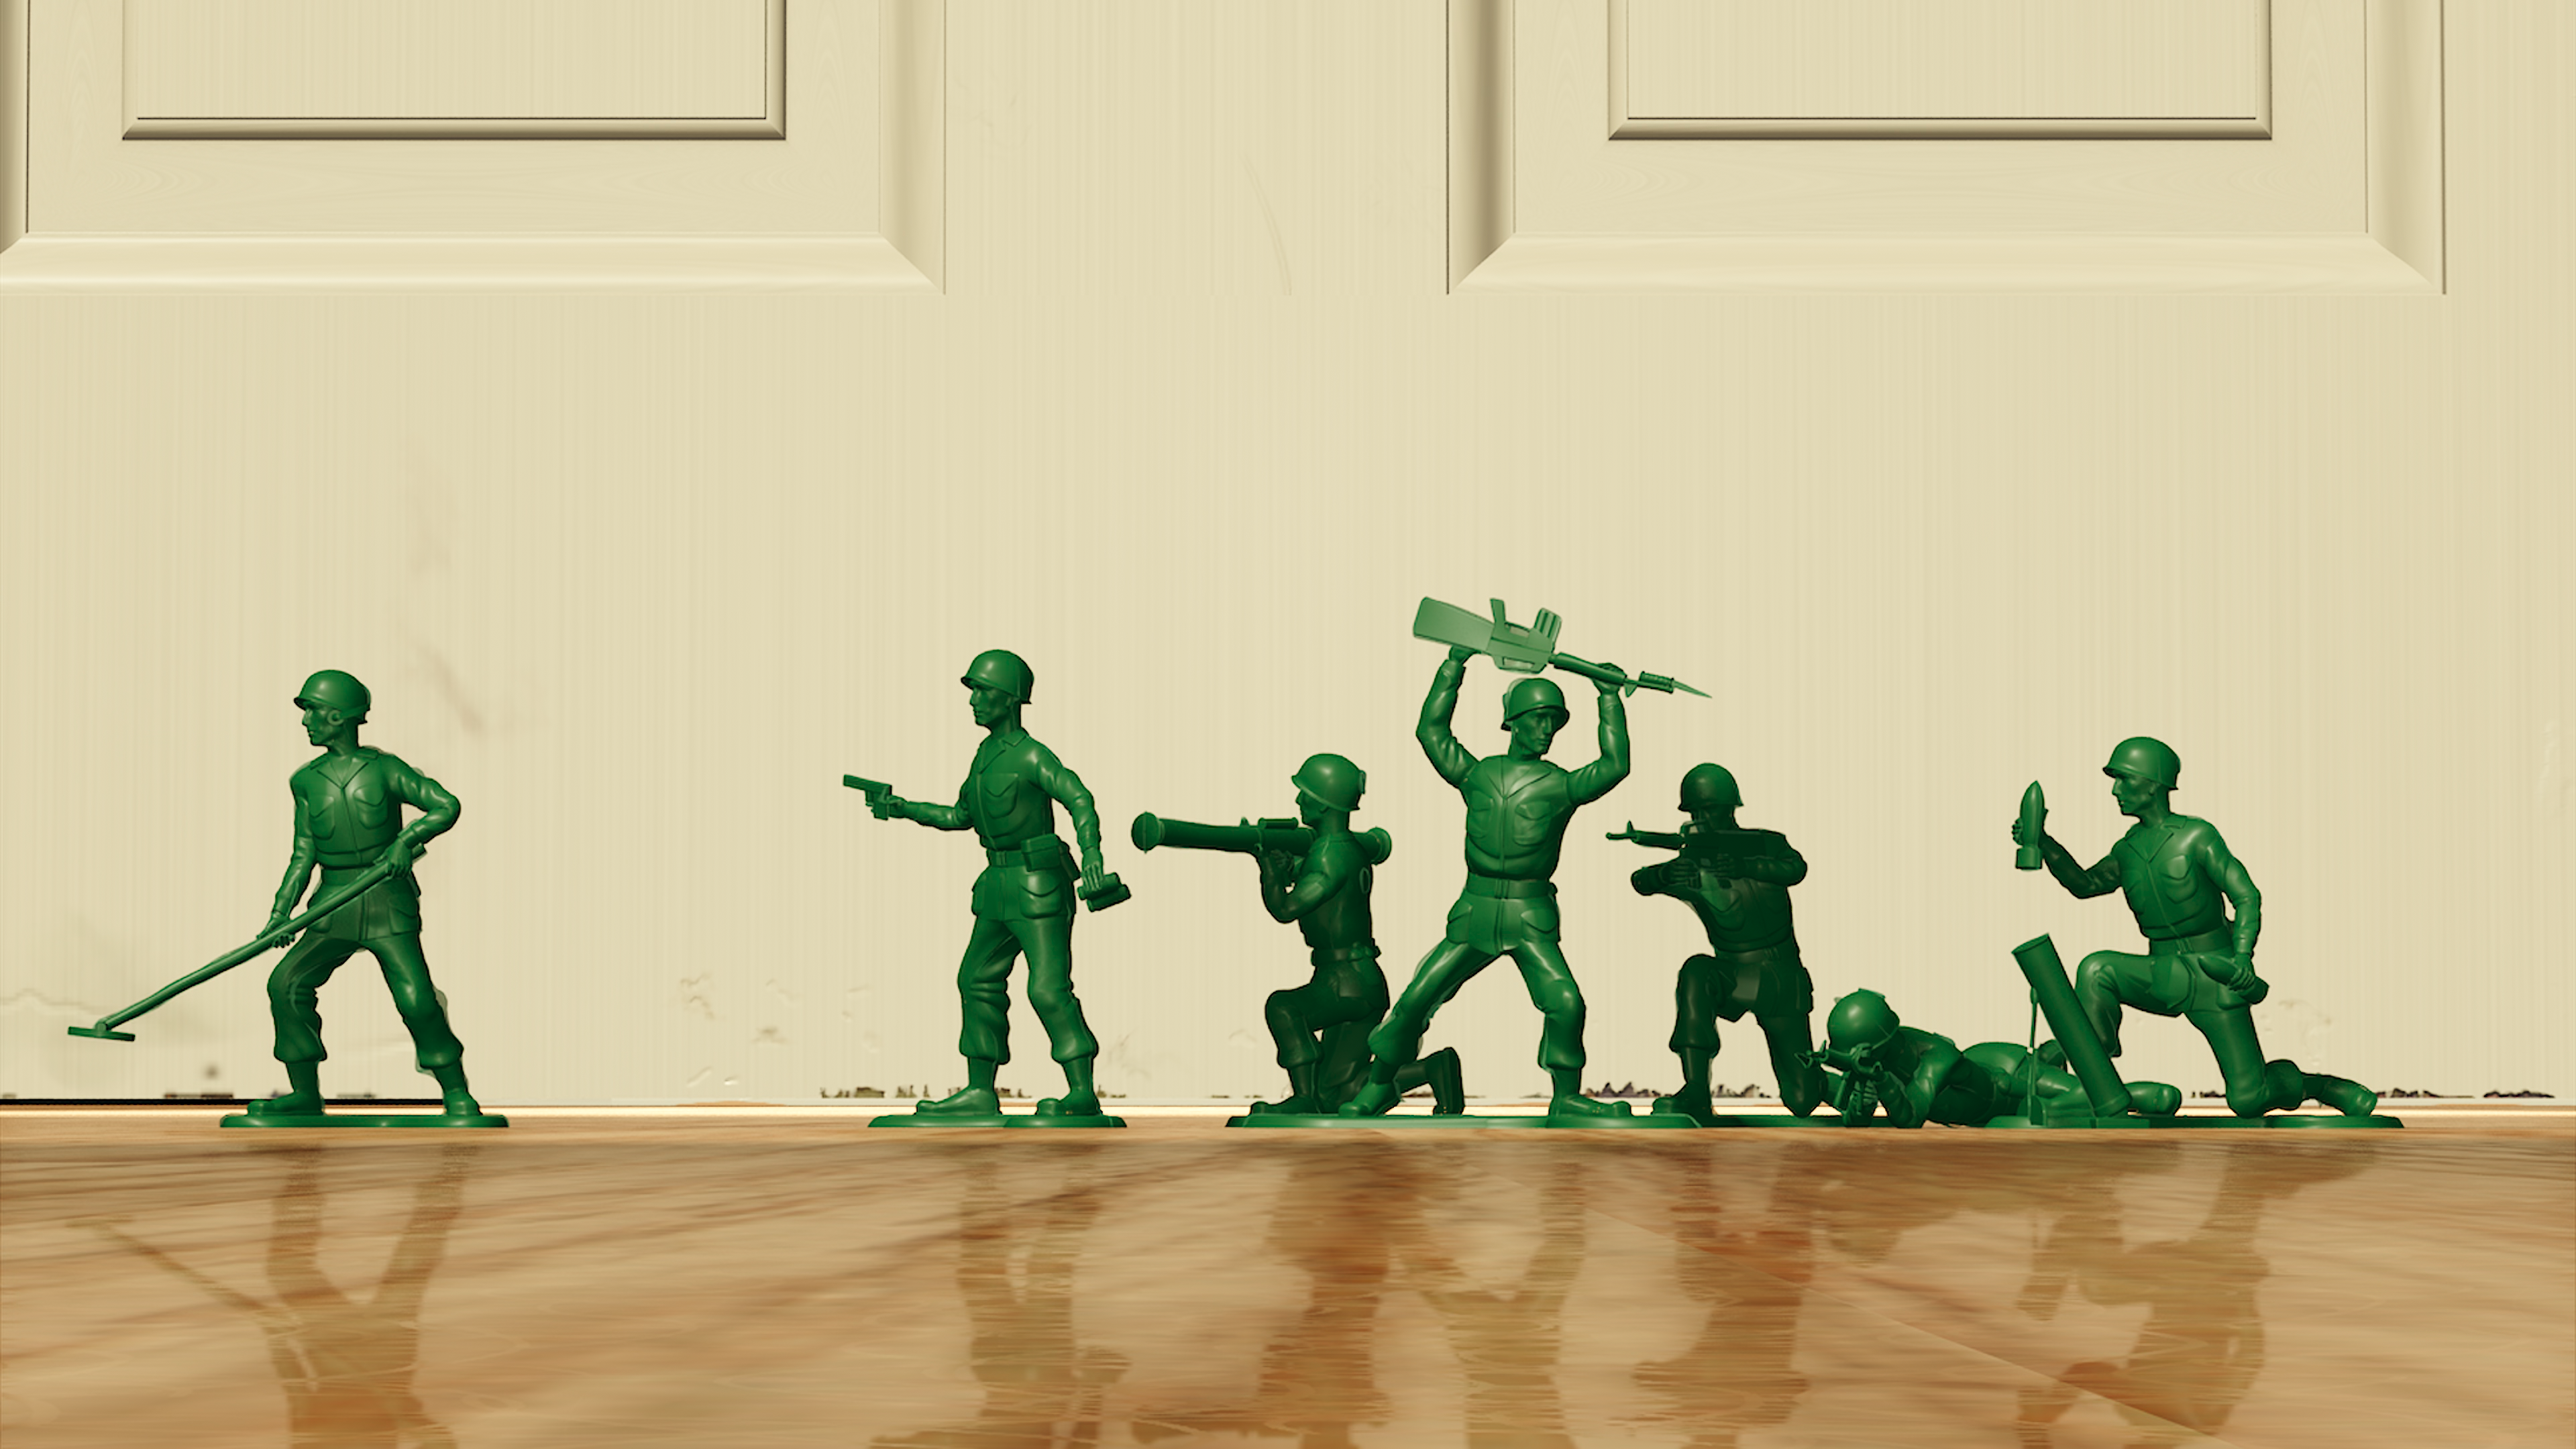 Посмотря вперед пятеро солдат. Toy story солдатики игра. Зеленые солдатики. Пластиковые солдатики.